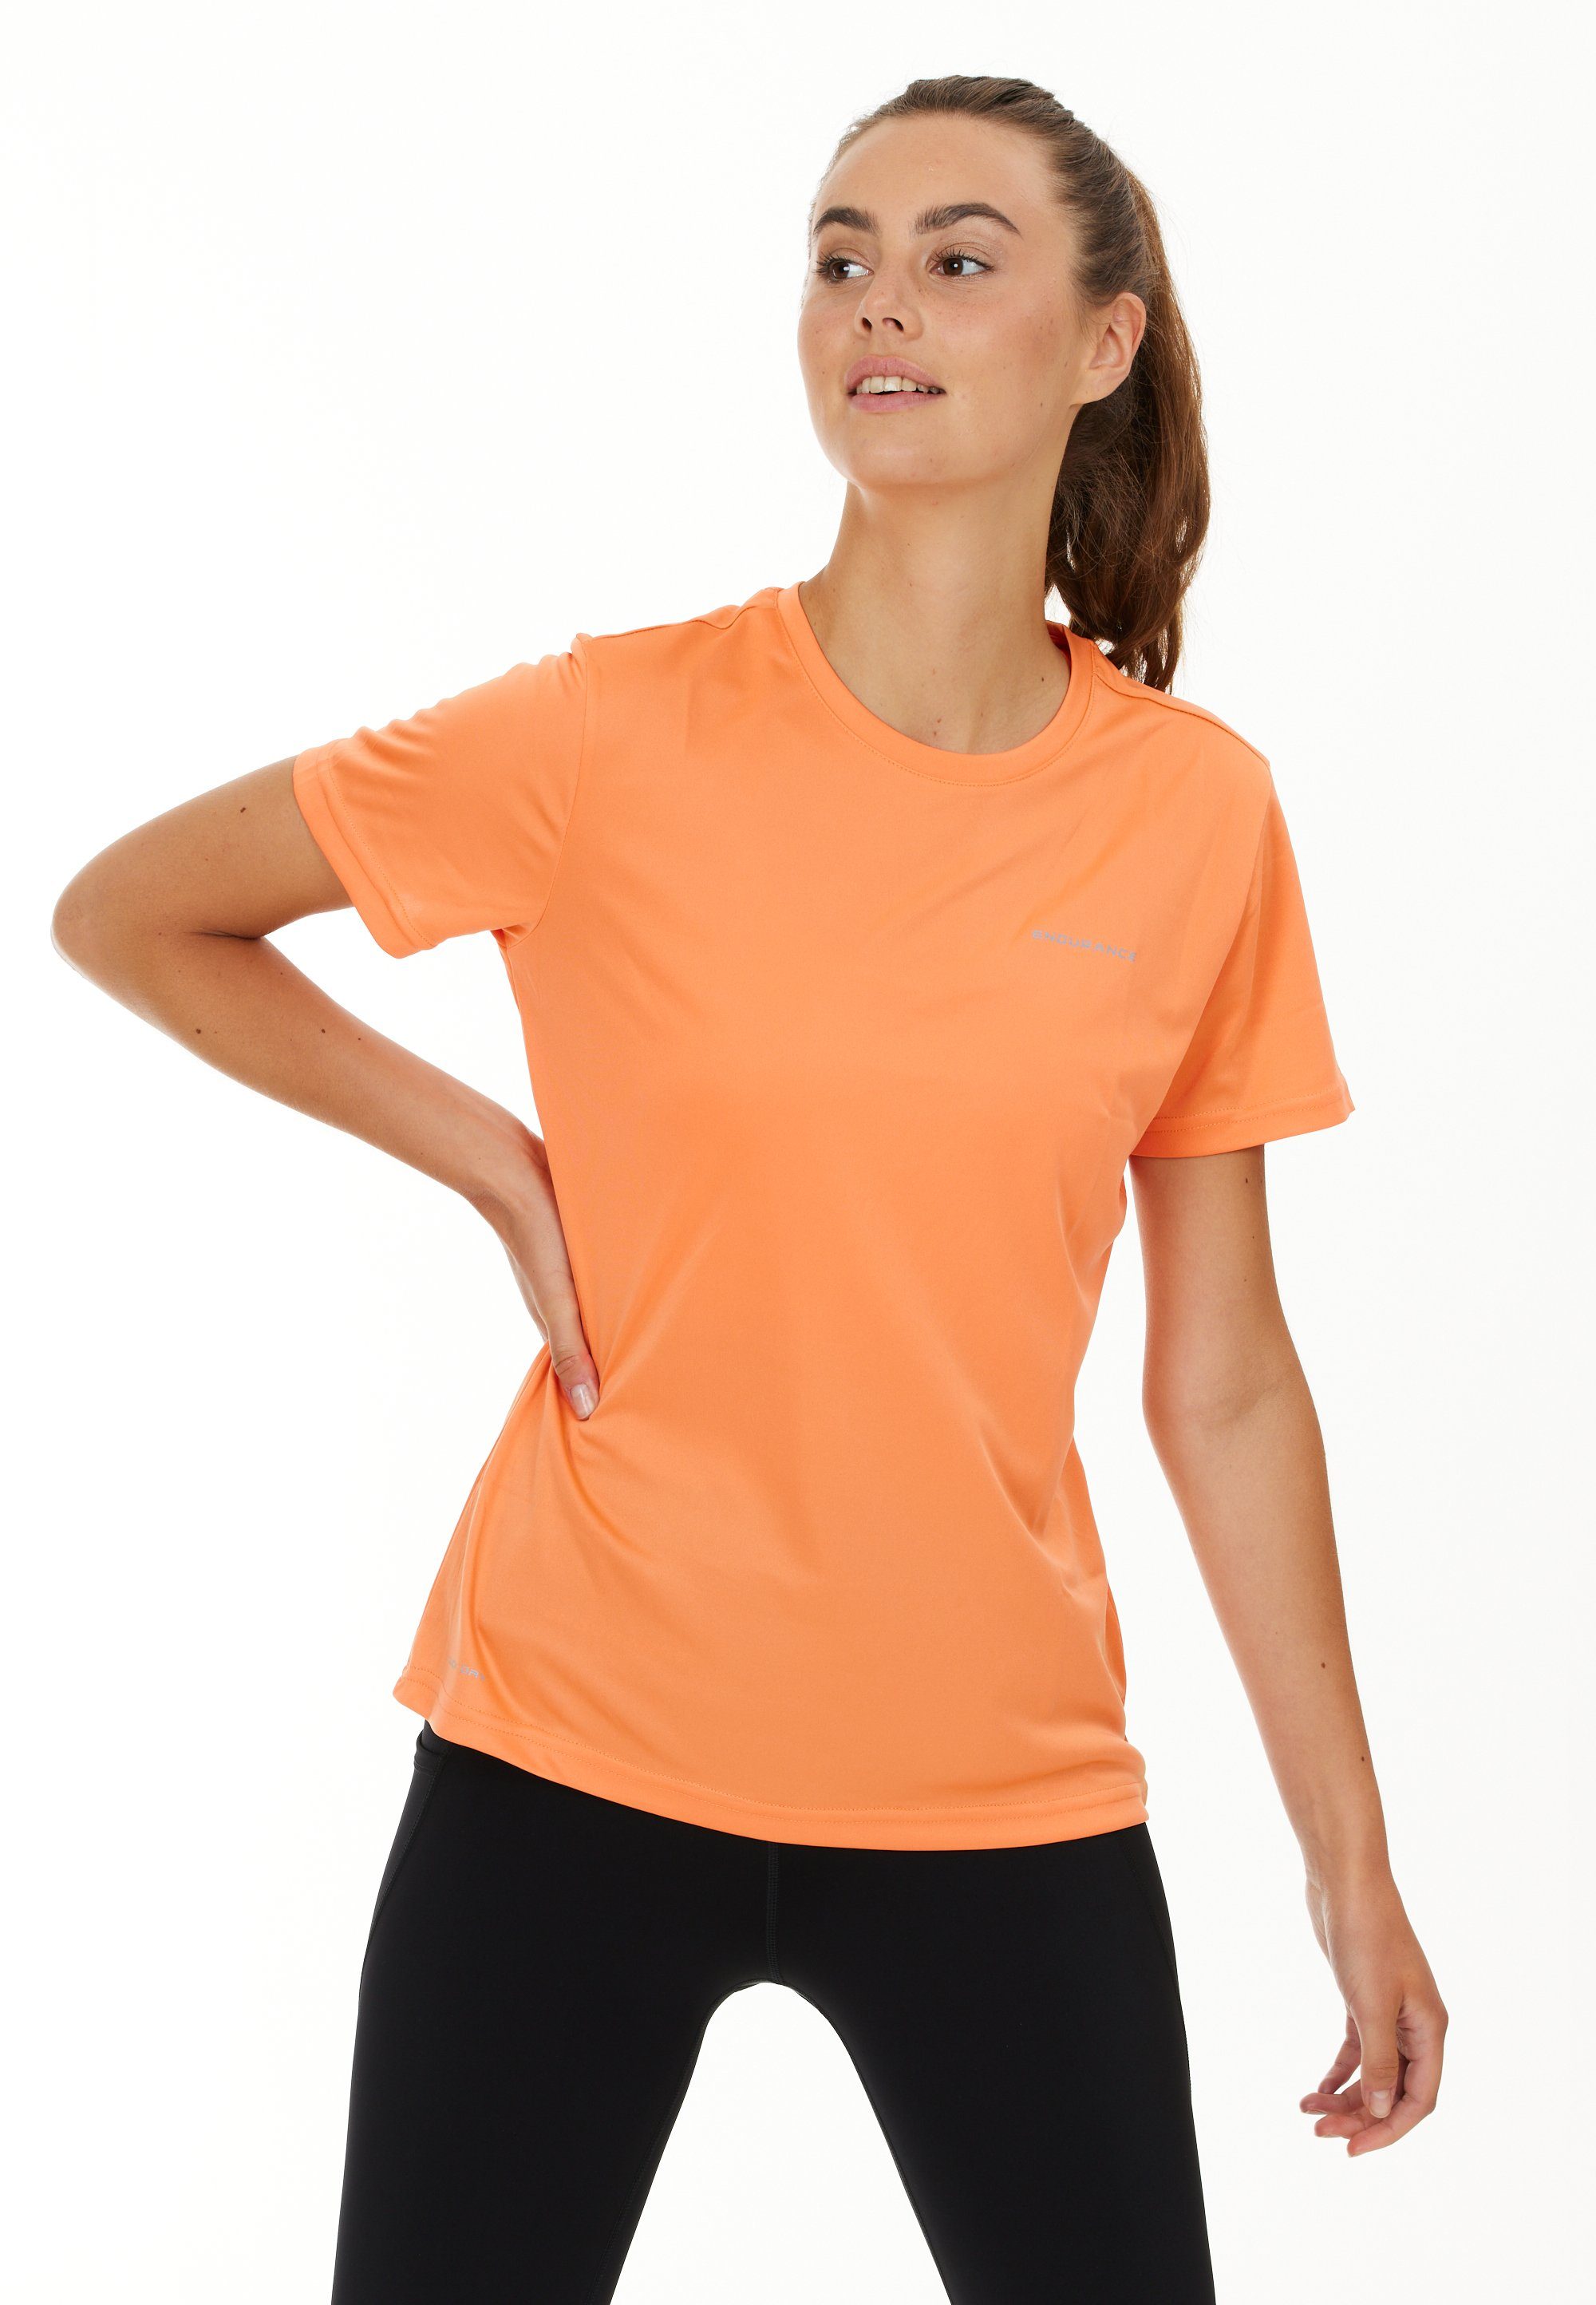 Endurance Shirts für Damen online kaufen | OTTO